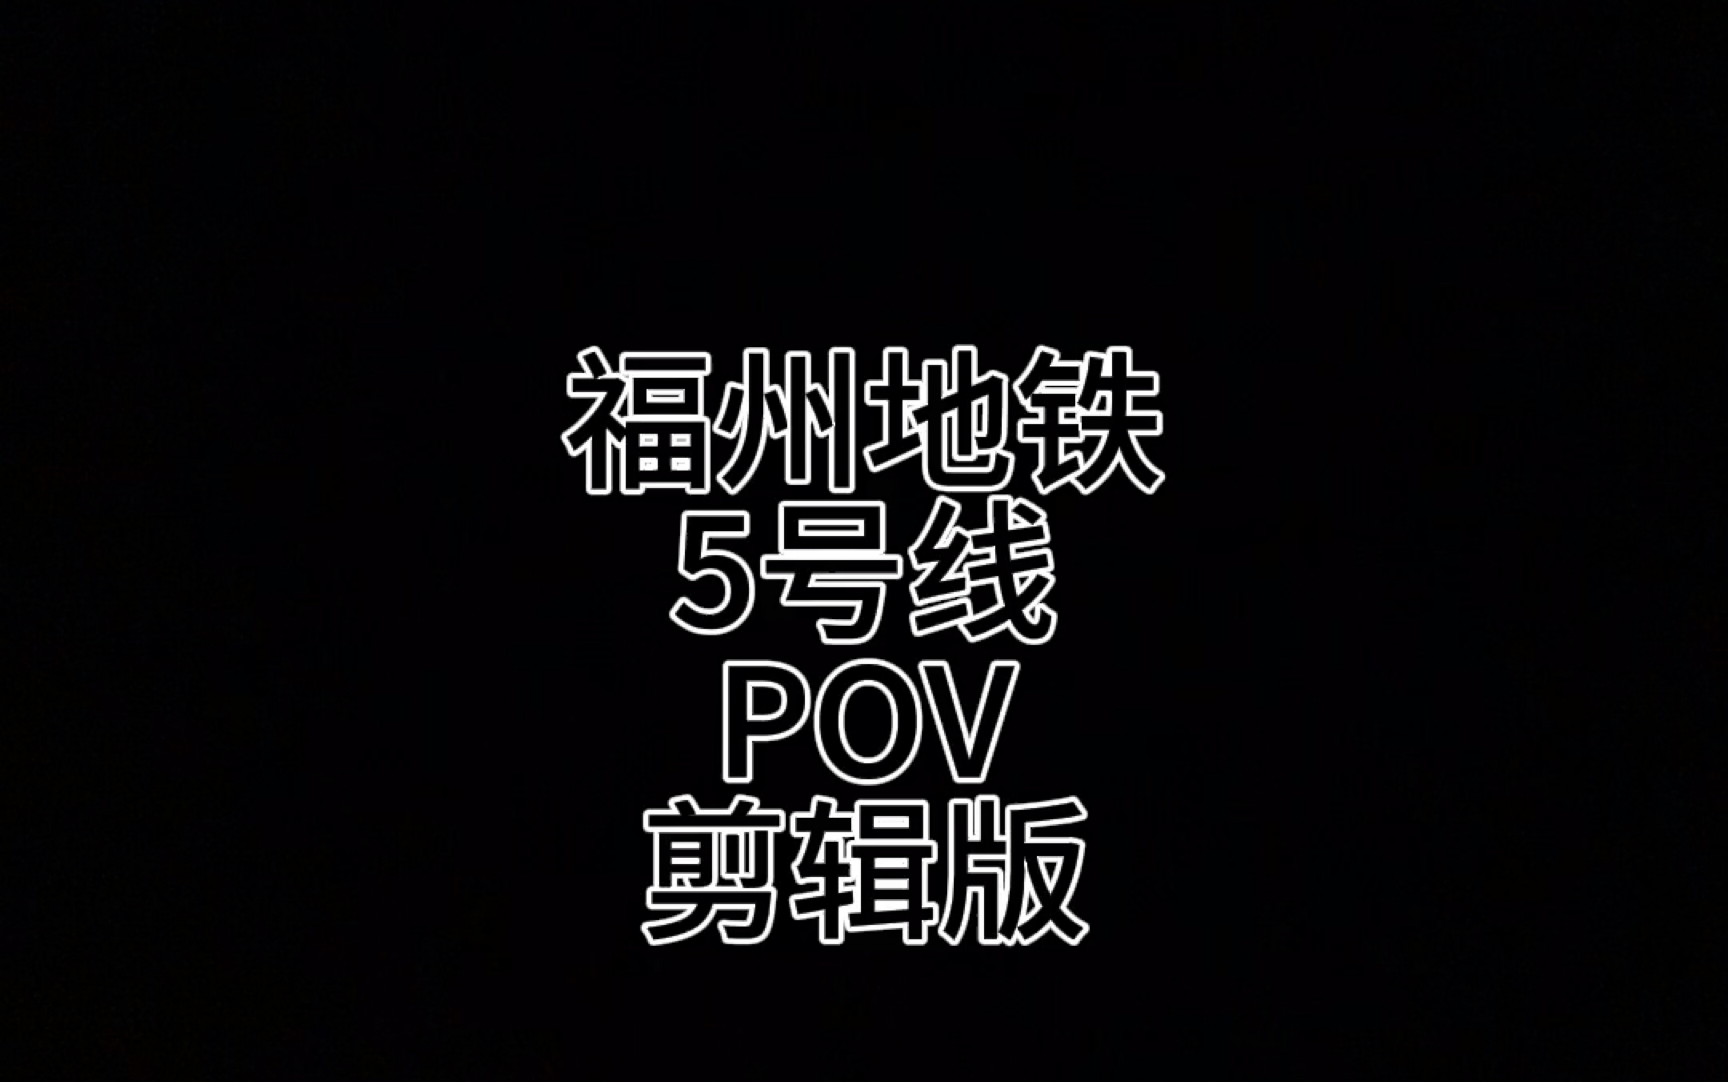 福州地铁5号线pov(up剪辑版)